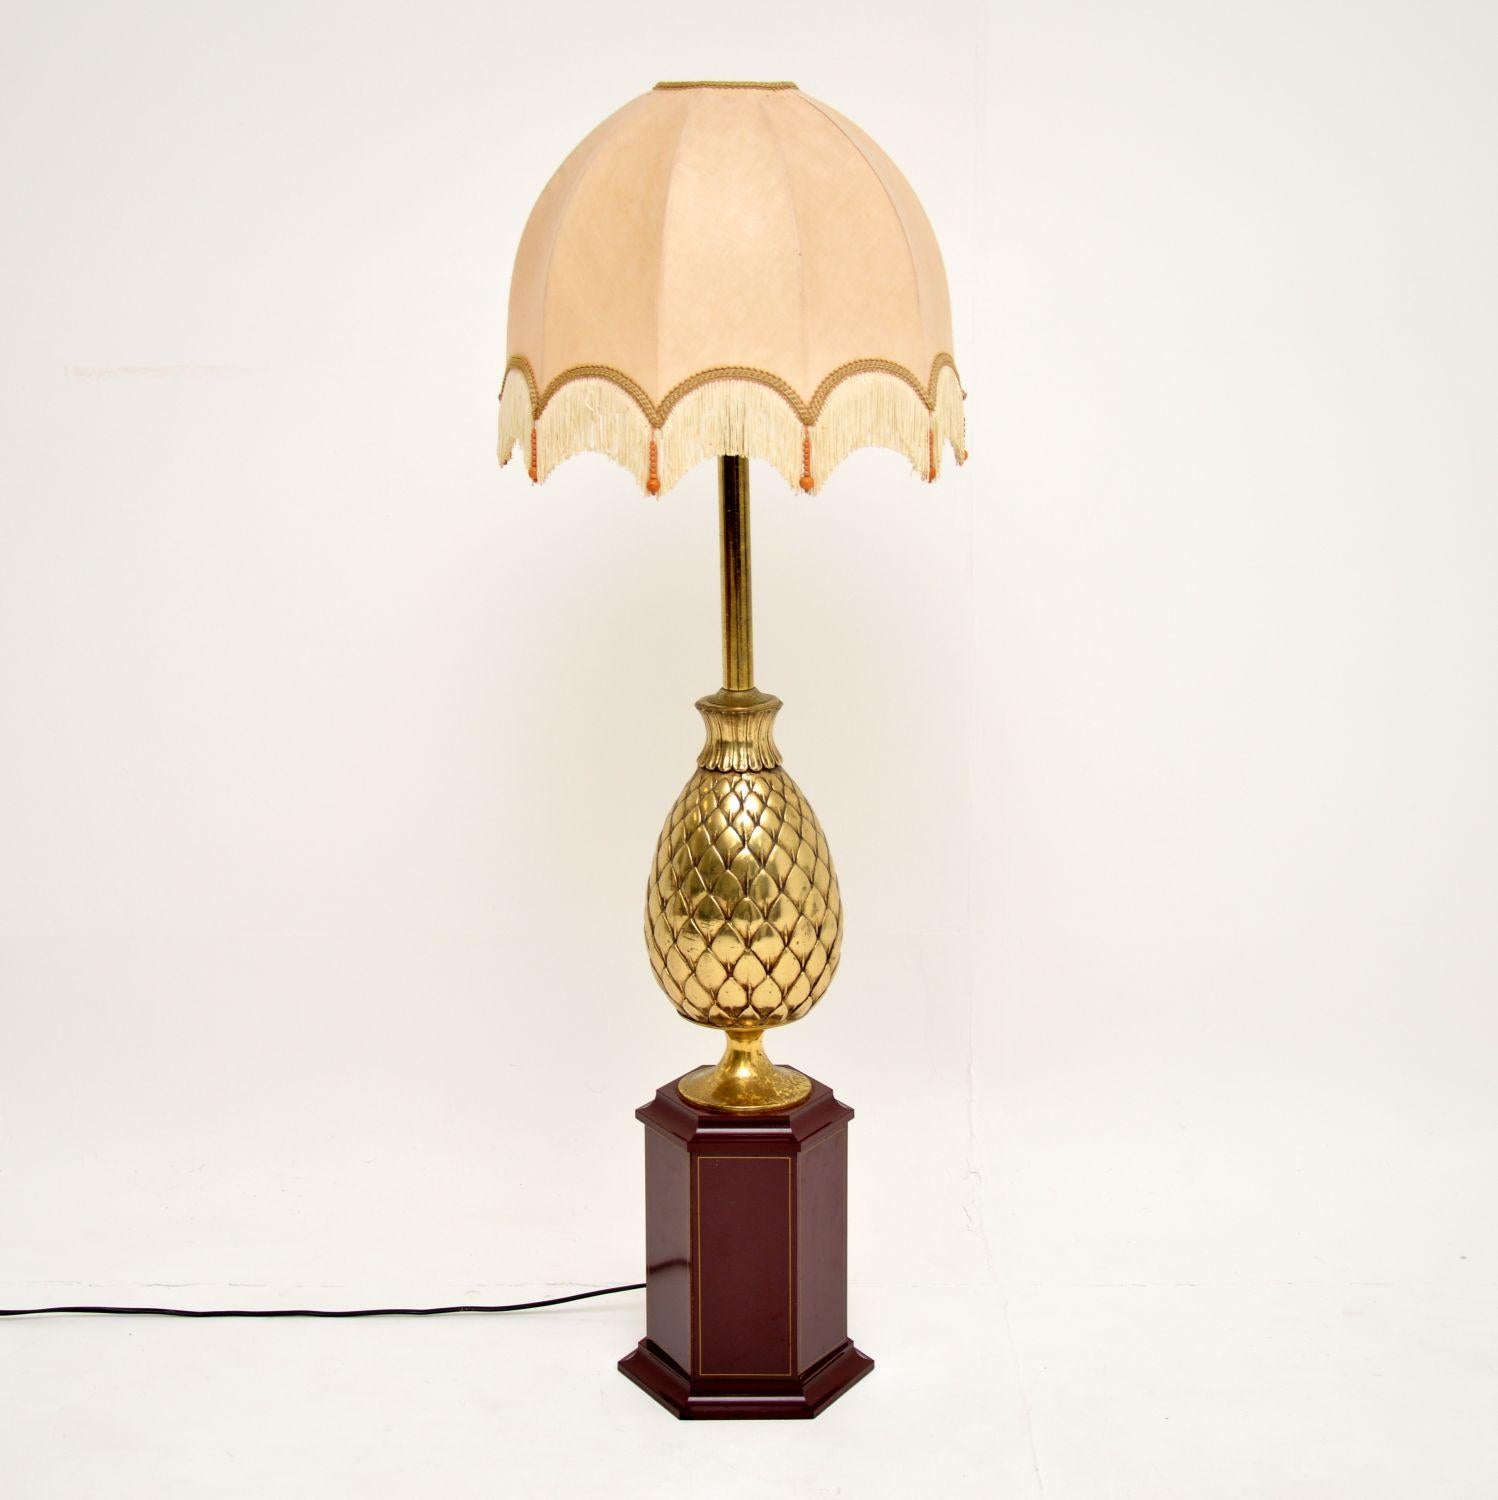 Une lampe de table vintage étonnante et très grande, fabriquée en France et datant des années 1970. Il mesure plus d'un mètre de haut et peut donc être utilisé comme lampe de table ou lampadaire.

Il possède une belle colonne en laiton en forme